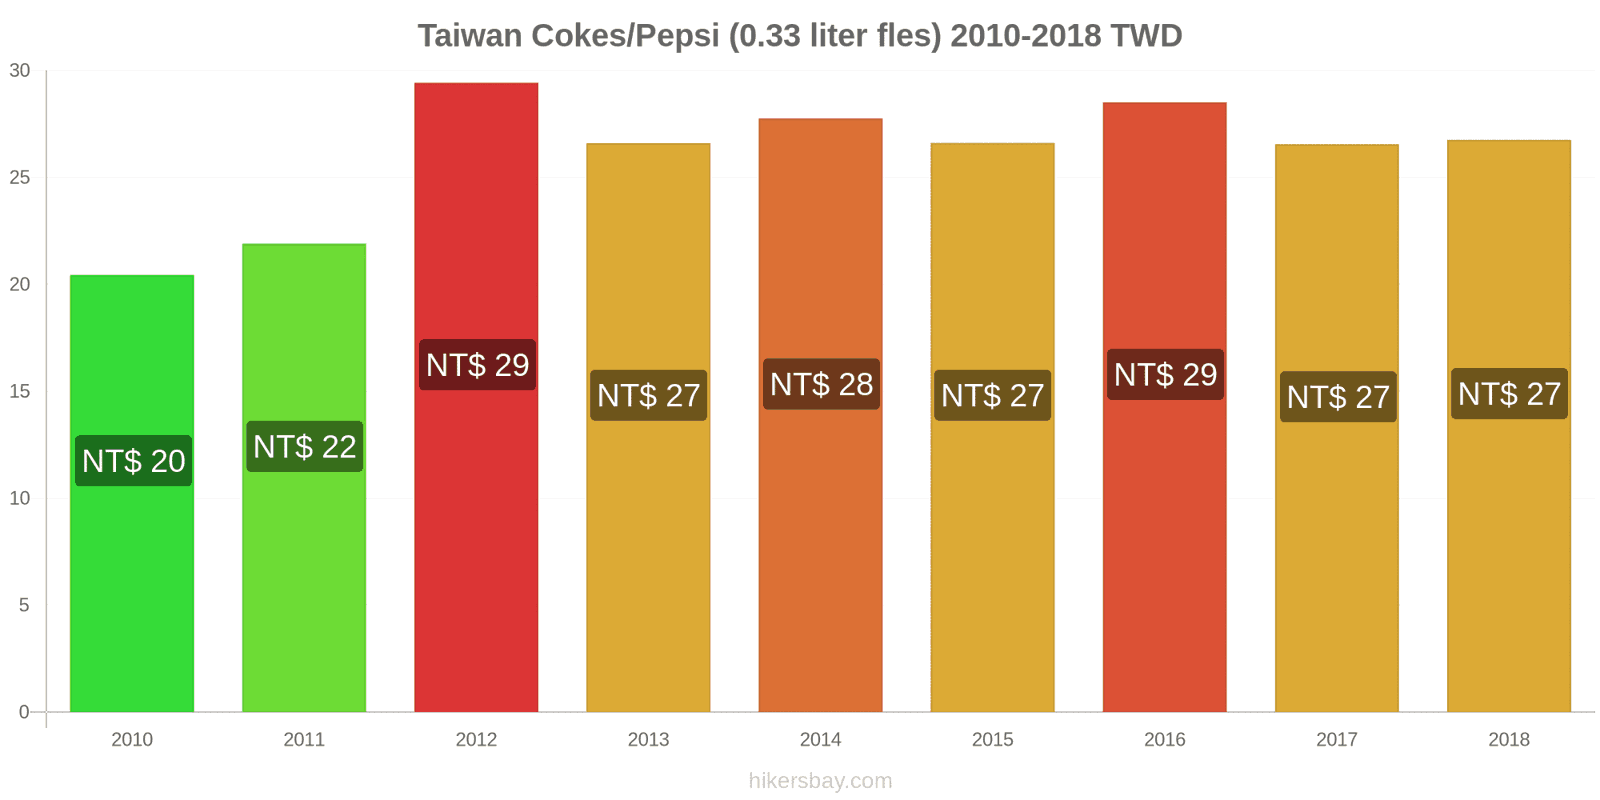 Taiwan prijswijzigingen Coca-Cola/Pepsi (0.33 liter fles) hikersbay.com